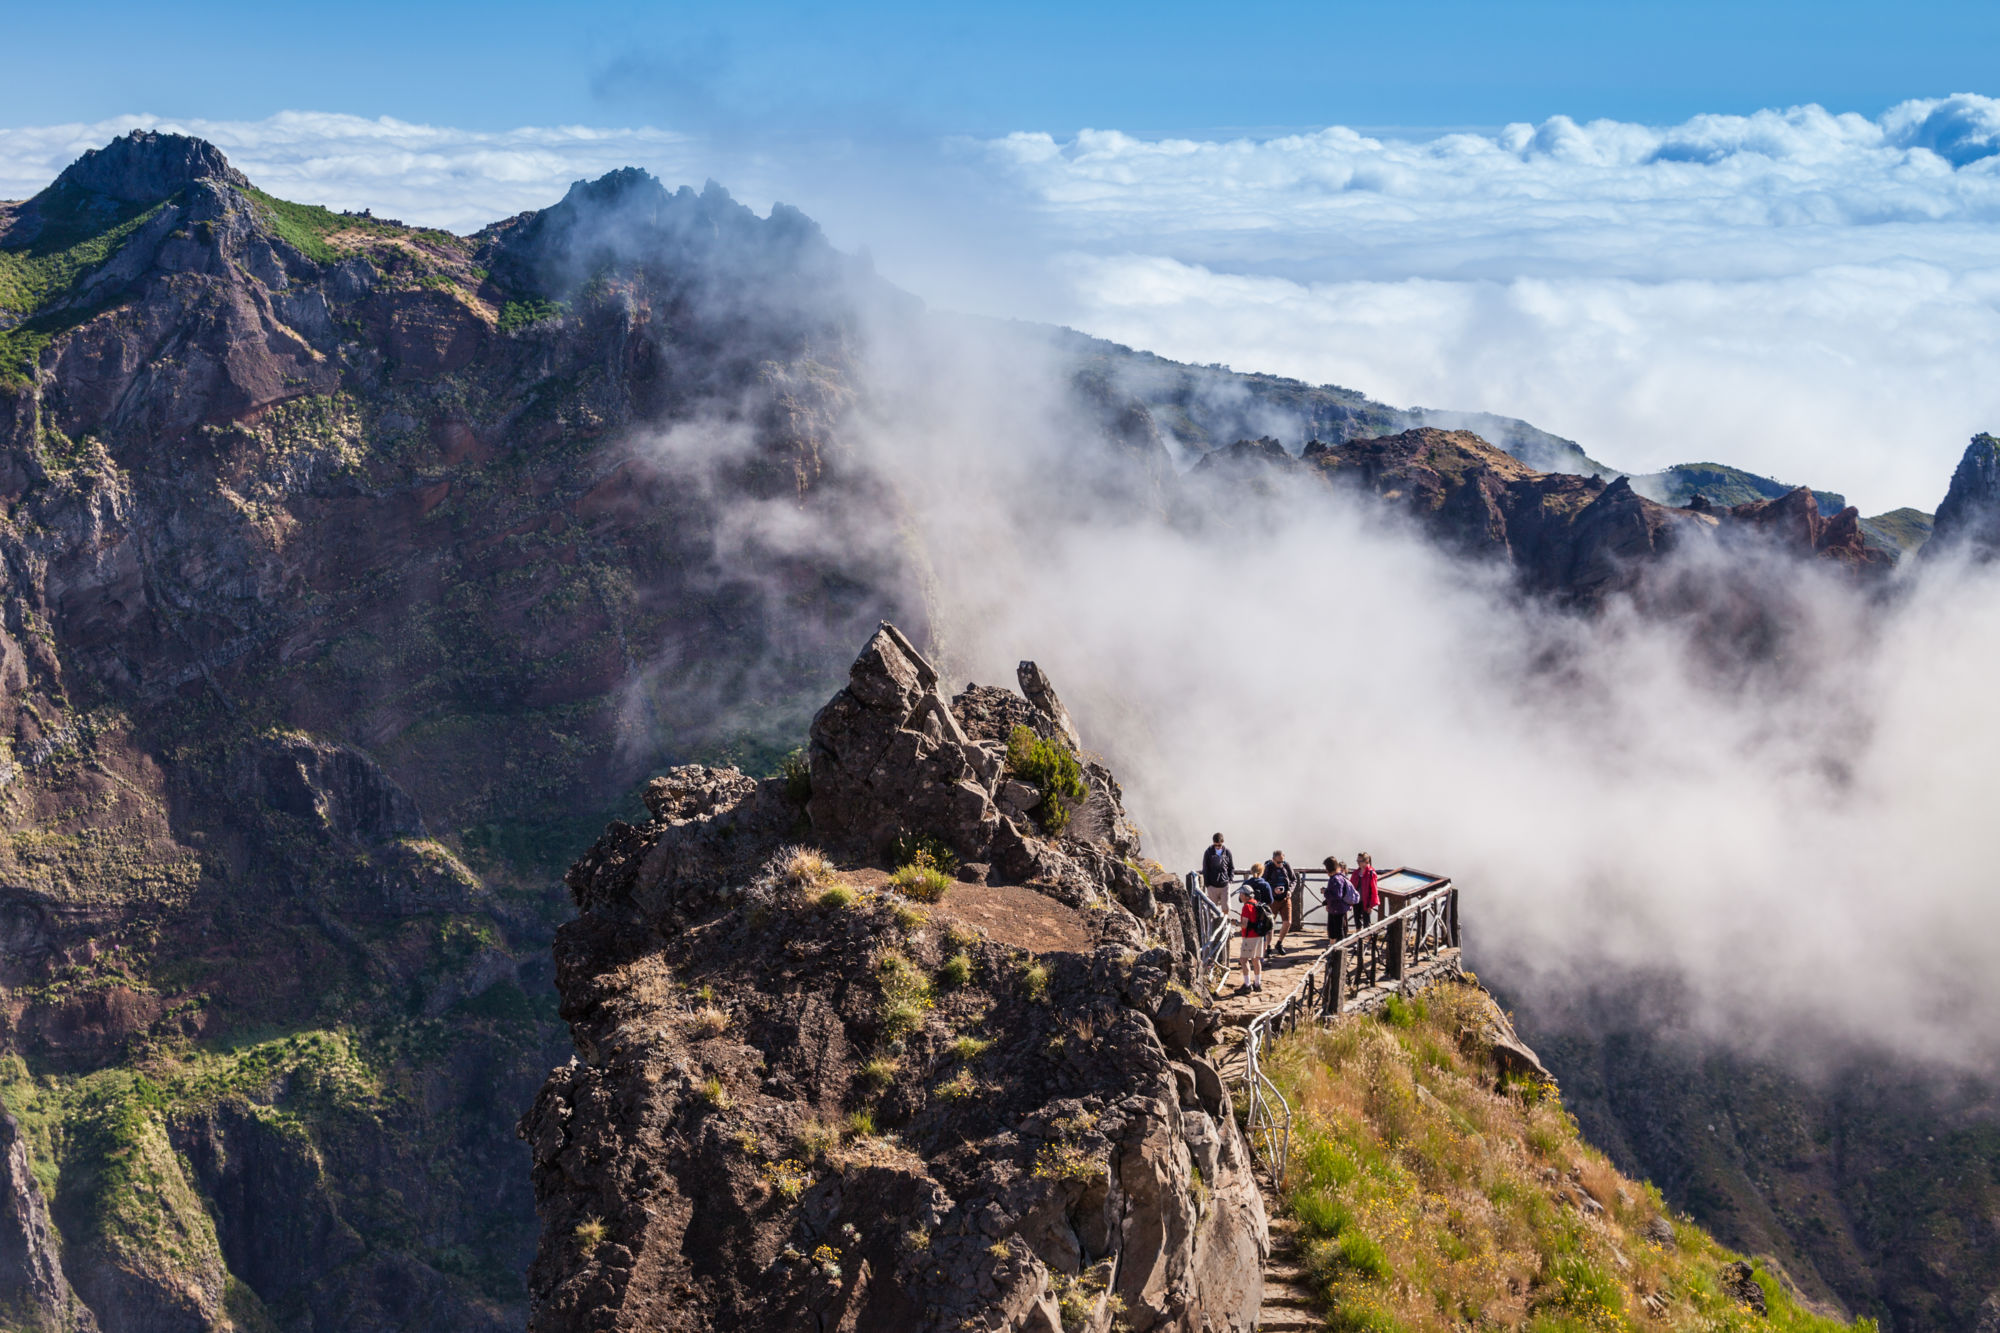 Trekking on Madeira island